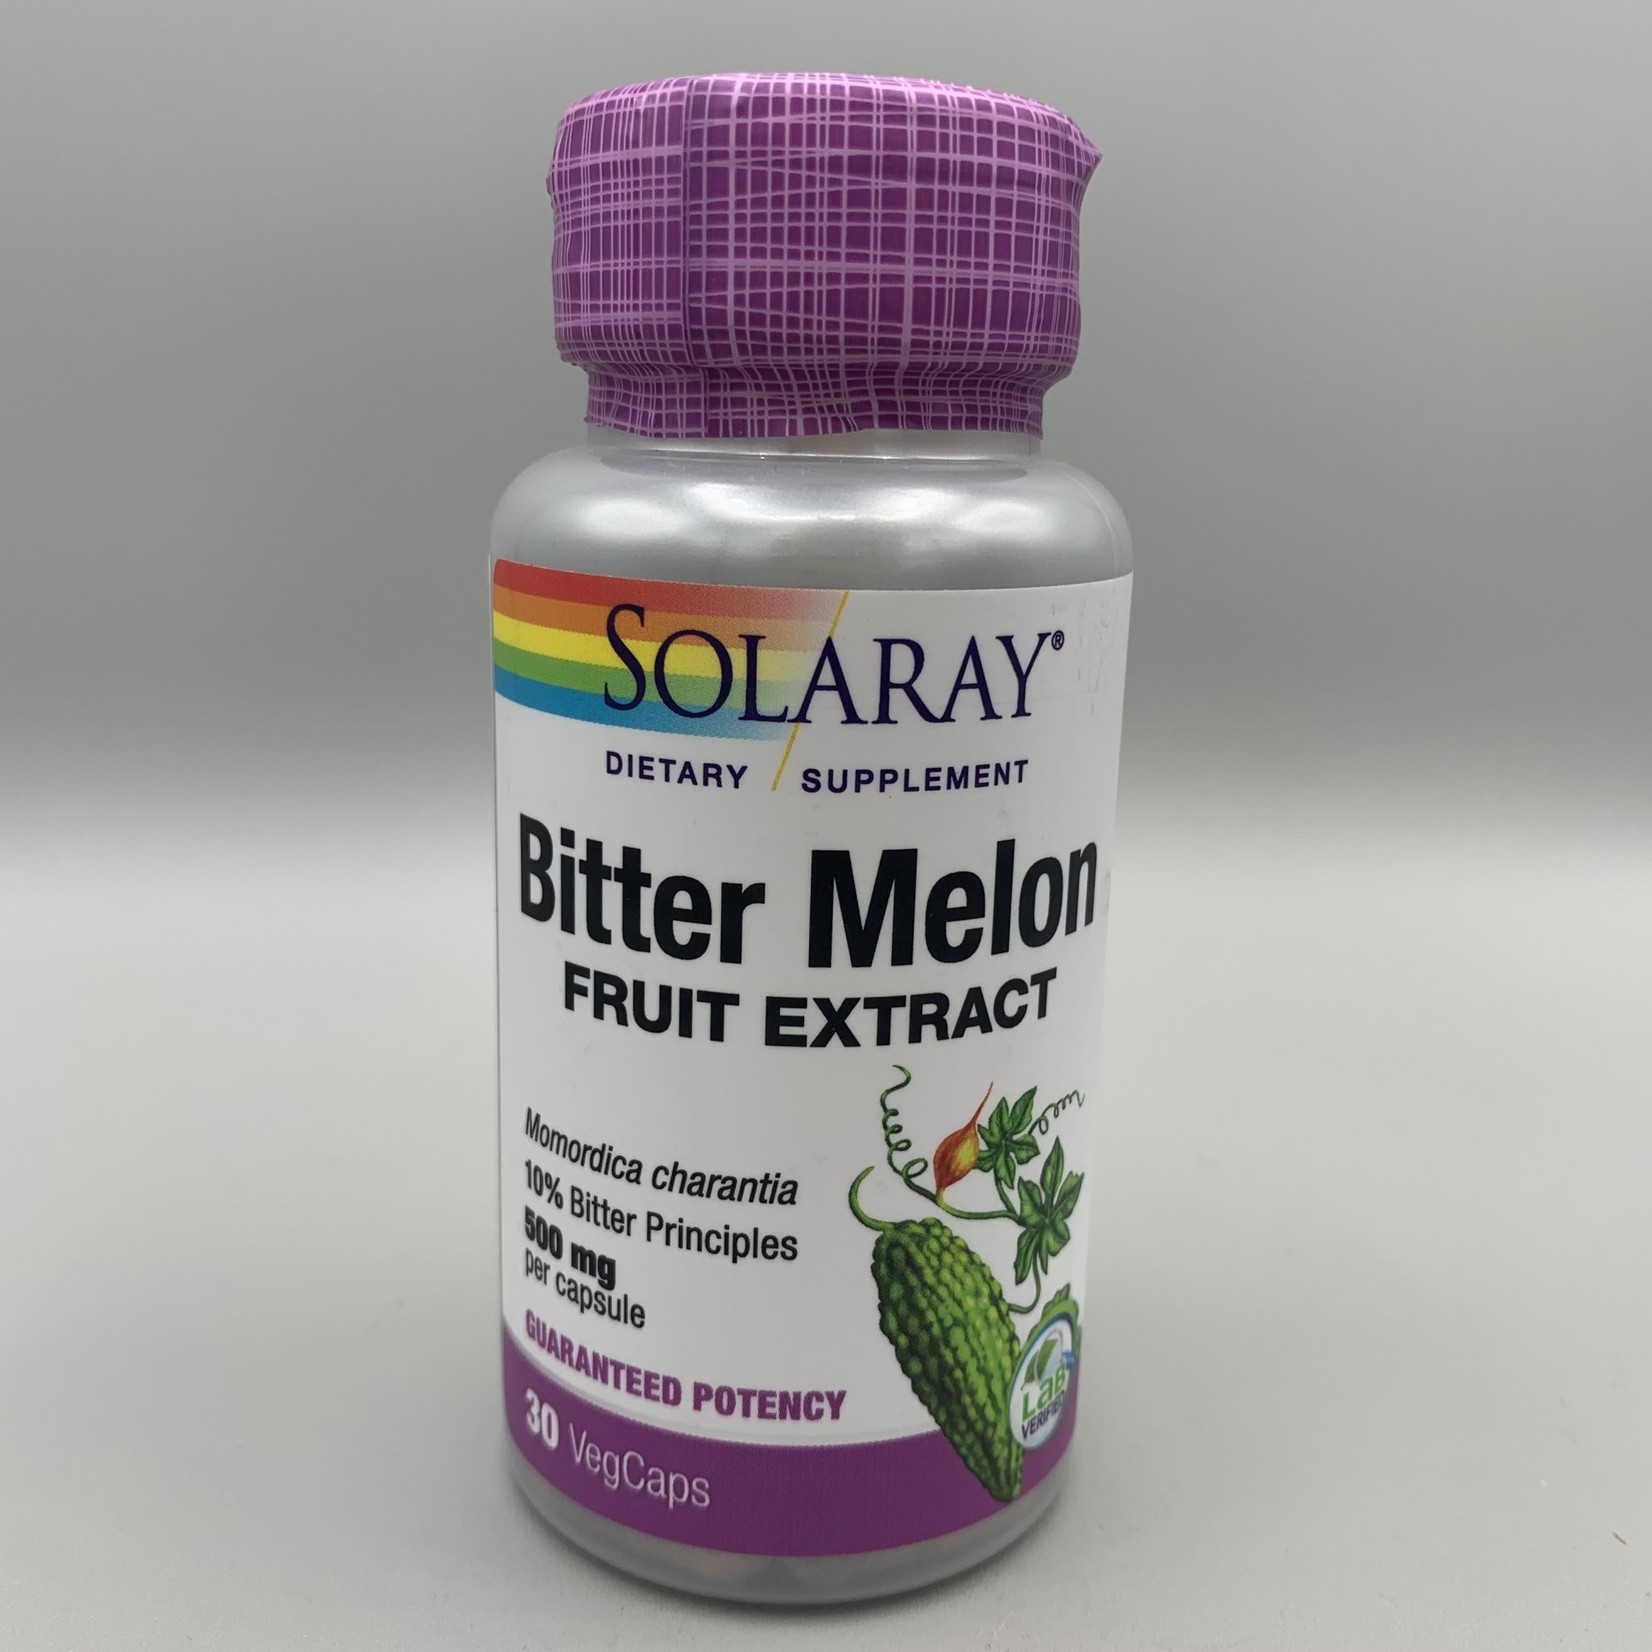 Solaray Solaray Bitter Melon Fruit Extract - 500 mg, 30 Veg. Capsules